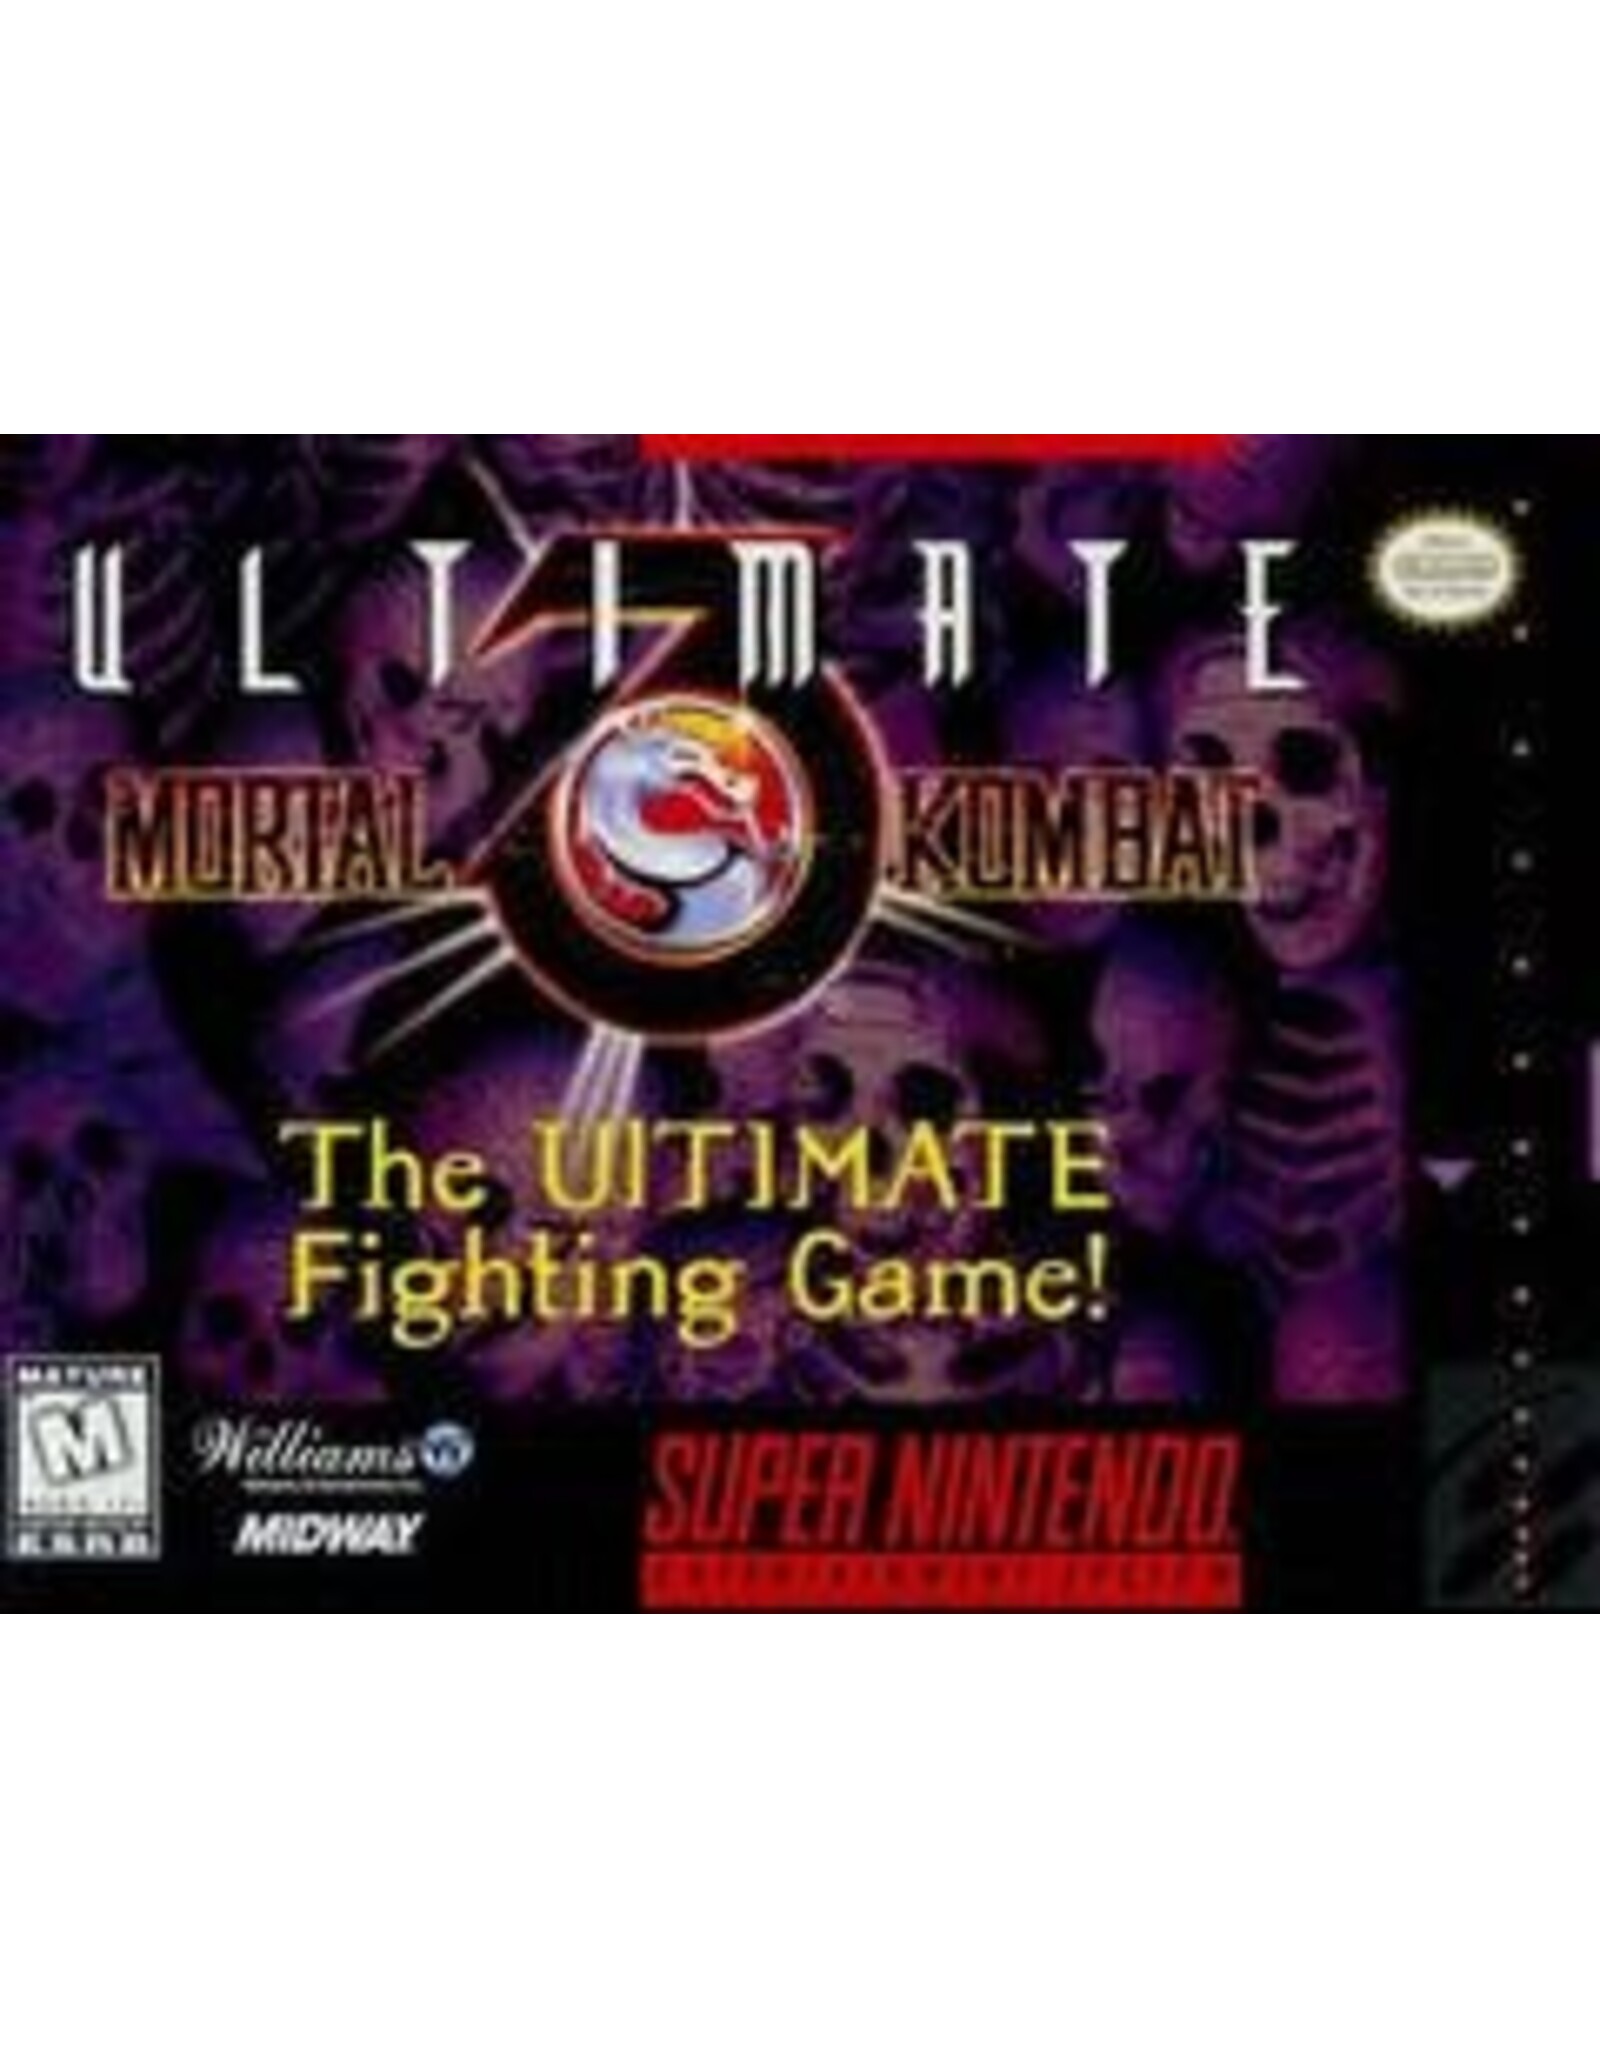 Super Nintendo Ultimate Mortal Kombat 3 (Cart Only, Damaged Label)